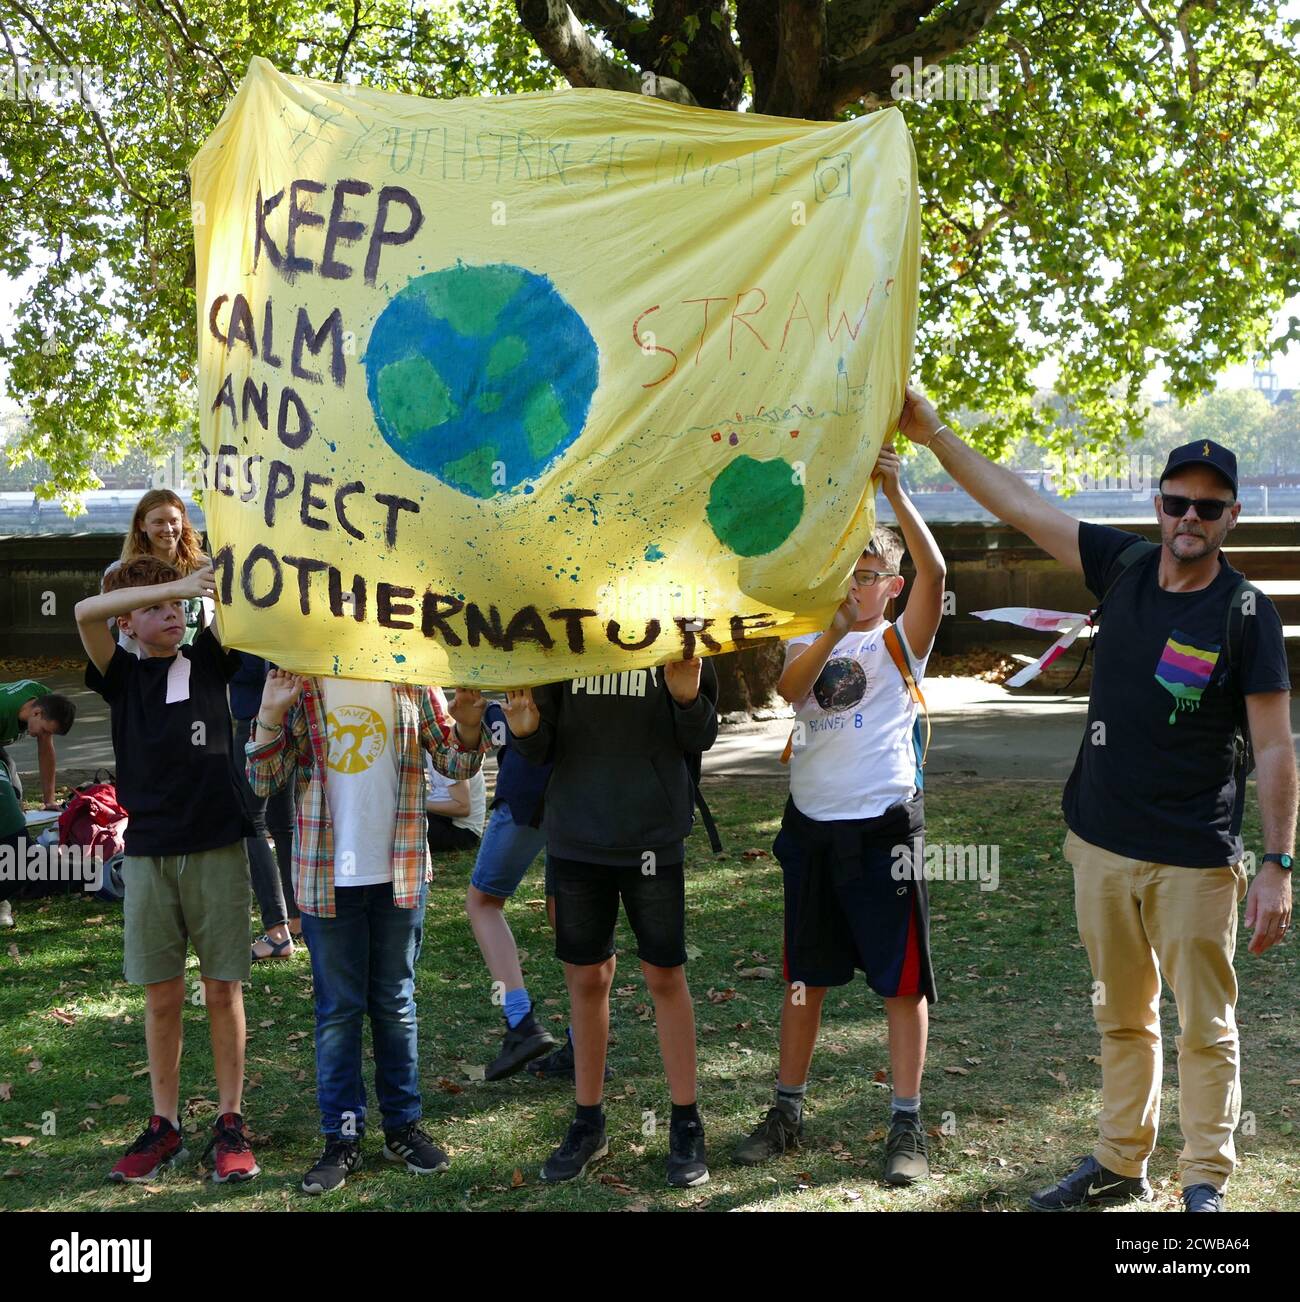 Demonstranten bei einer Kundgebung im Victoria Park, in der Nähe des Parlaments, London, während des Klimastreiks vom 20. September 2019. Auch bekannt als die Globale Woche der Zukunft, eine Reihe von internationalen Streiks und Protesten, um Maßnahmen gegen den Klimawandel zu fordern. Die Proteste vom 20. September waren wahrscheinlich die größten Klimaangriffe der Weltgeschichte. Die Organisatoren berichteten, dass weltweit über 4 Millionen Menschen an Streiks teilgenommen haben, darunter 300000 Menschen, die sich britischen Protesten angeschlossen haben. Greta Thunberg, (* 3. Januar 2003), schwedische Umweltaktivistin, hat sich der weltweiten Sensibilisierung für die Risiken von Clim zugeschrieben Stockfoto